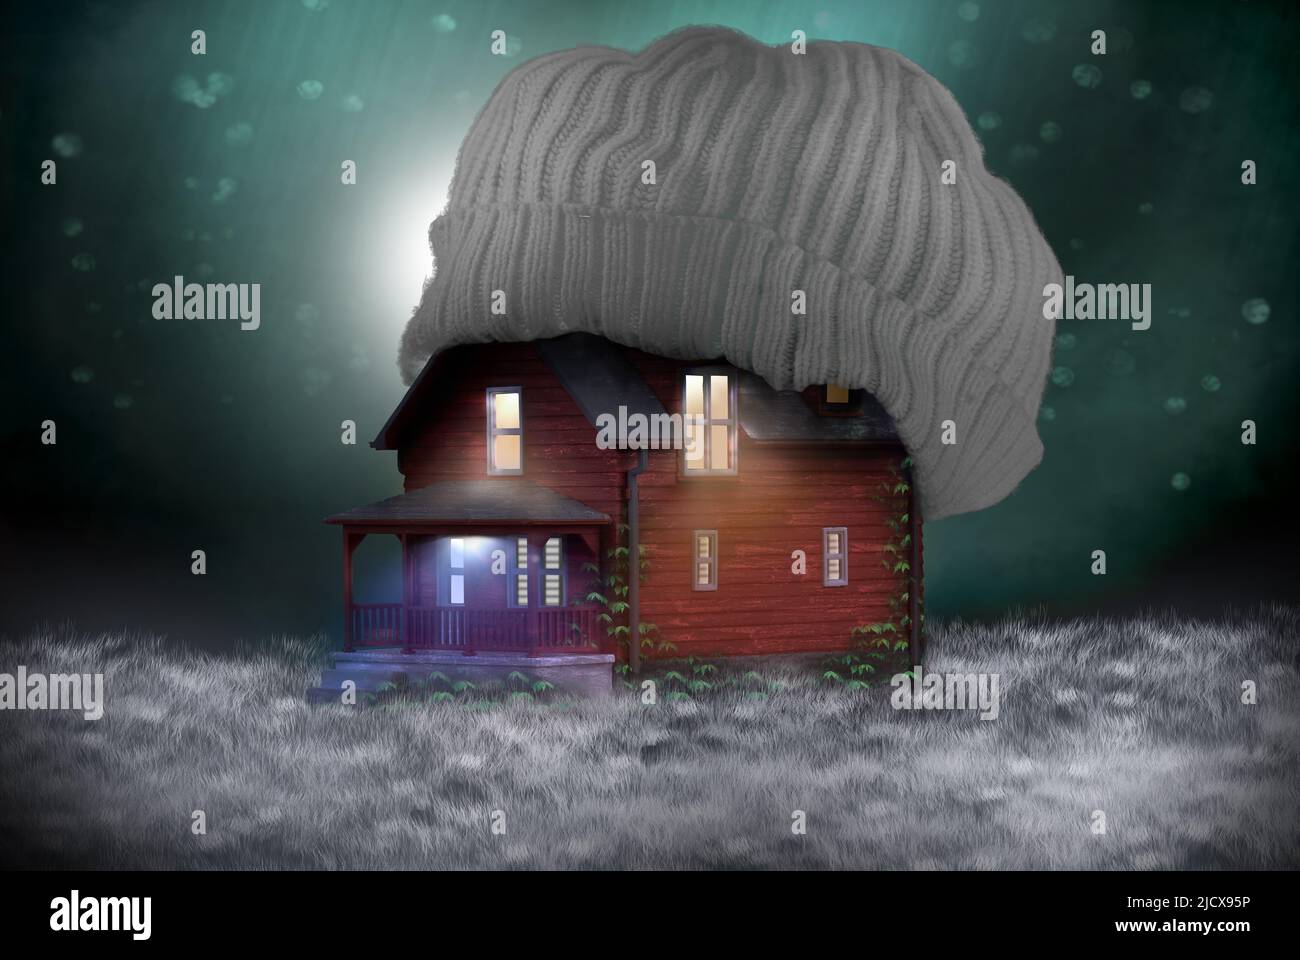 Energy Crisis concetto di casa calda per riscaldamento invernale bollette. Casa con cappello di lana sul tetto per fermare il calore centrale di riscaldamento che sfugge. Isolamento loft co Foto Stock